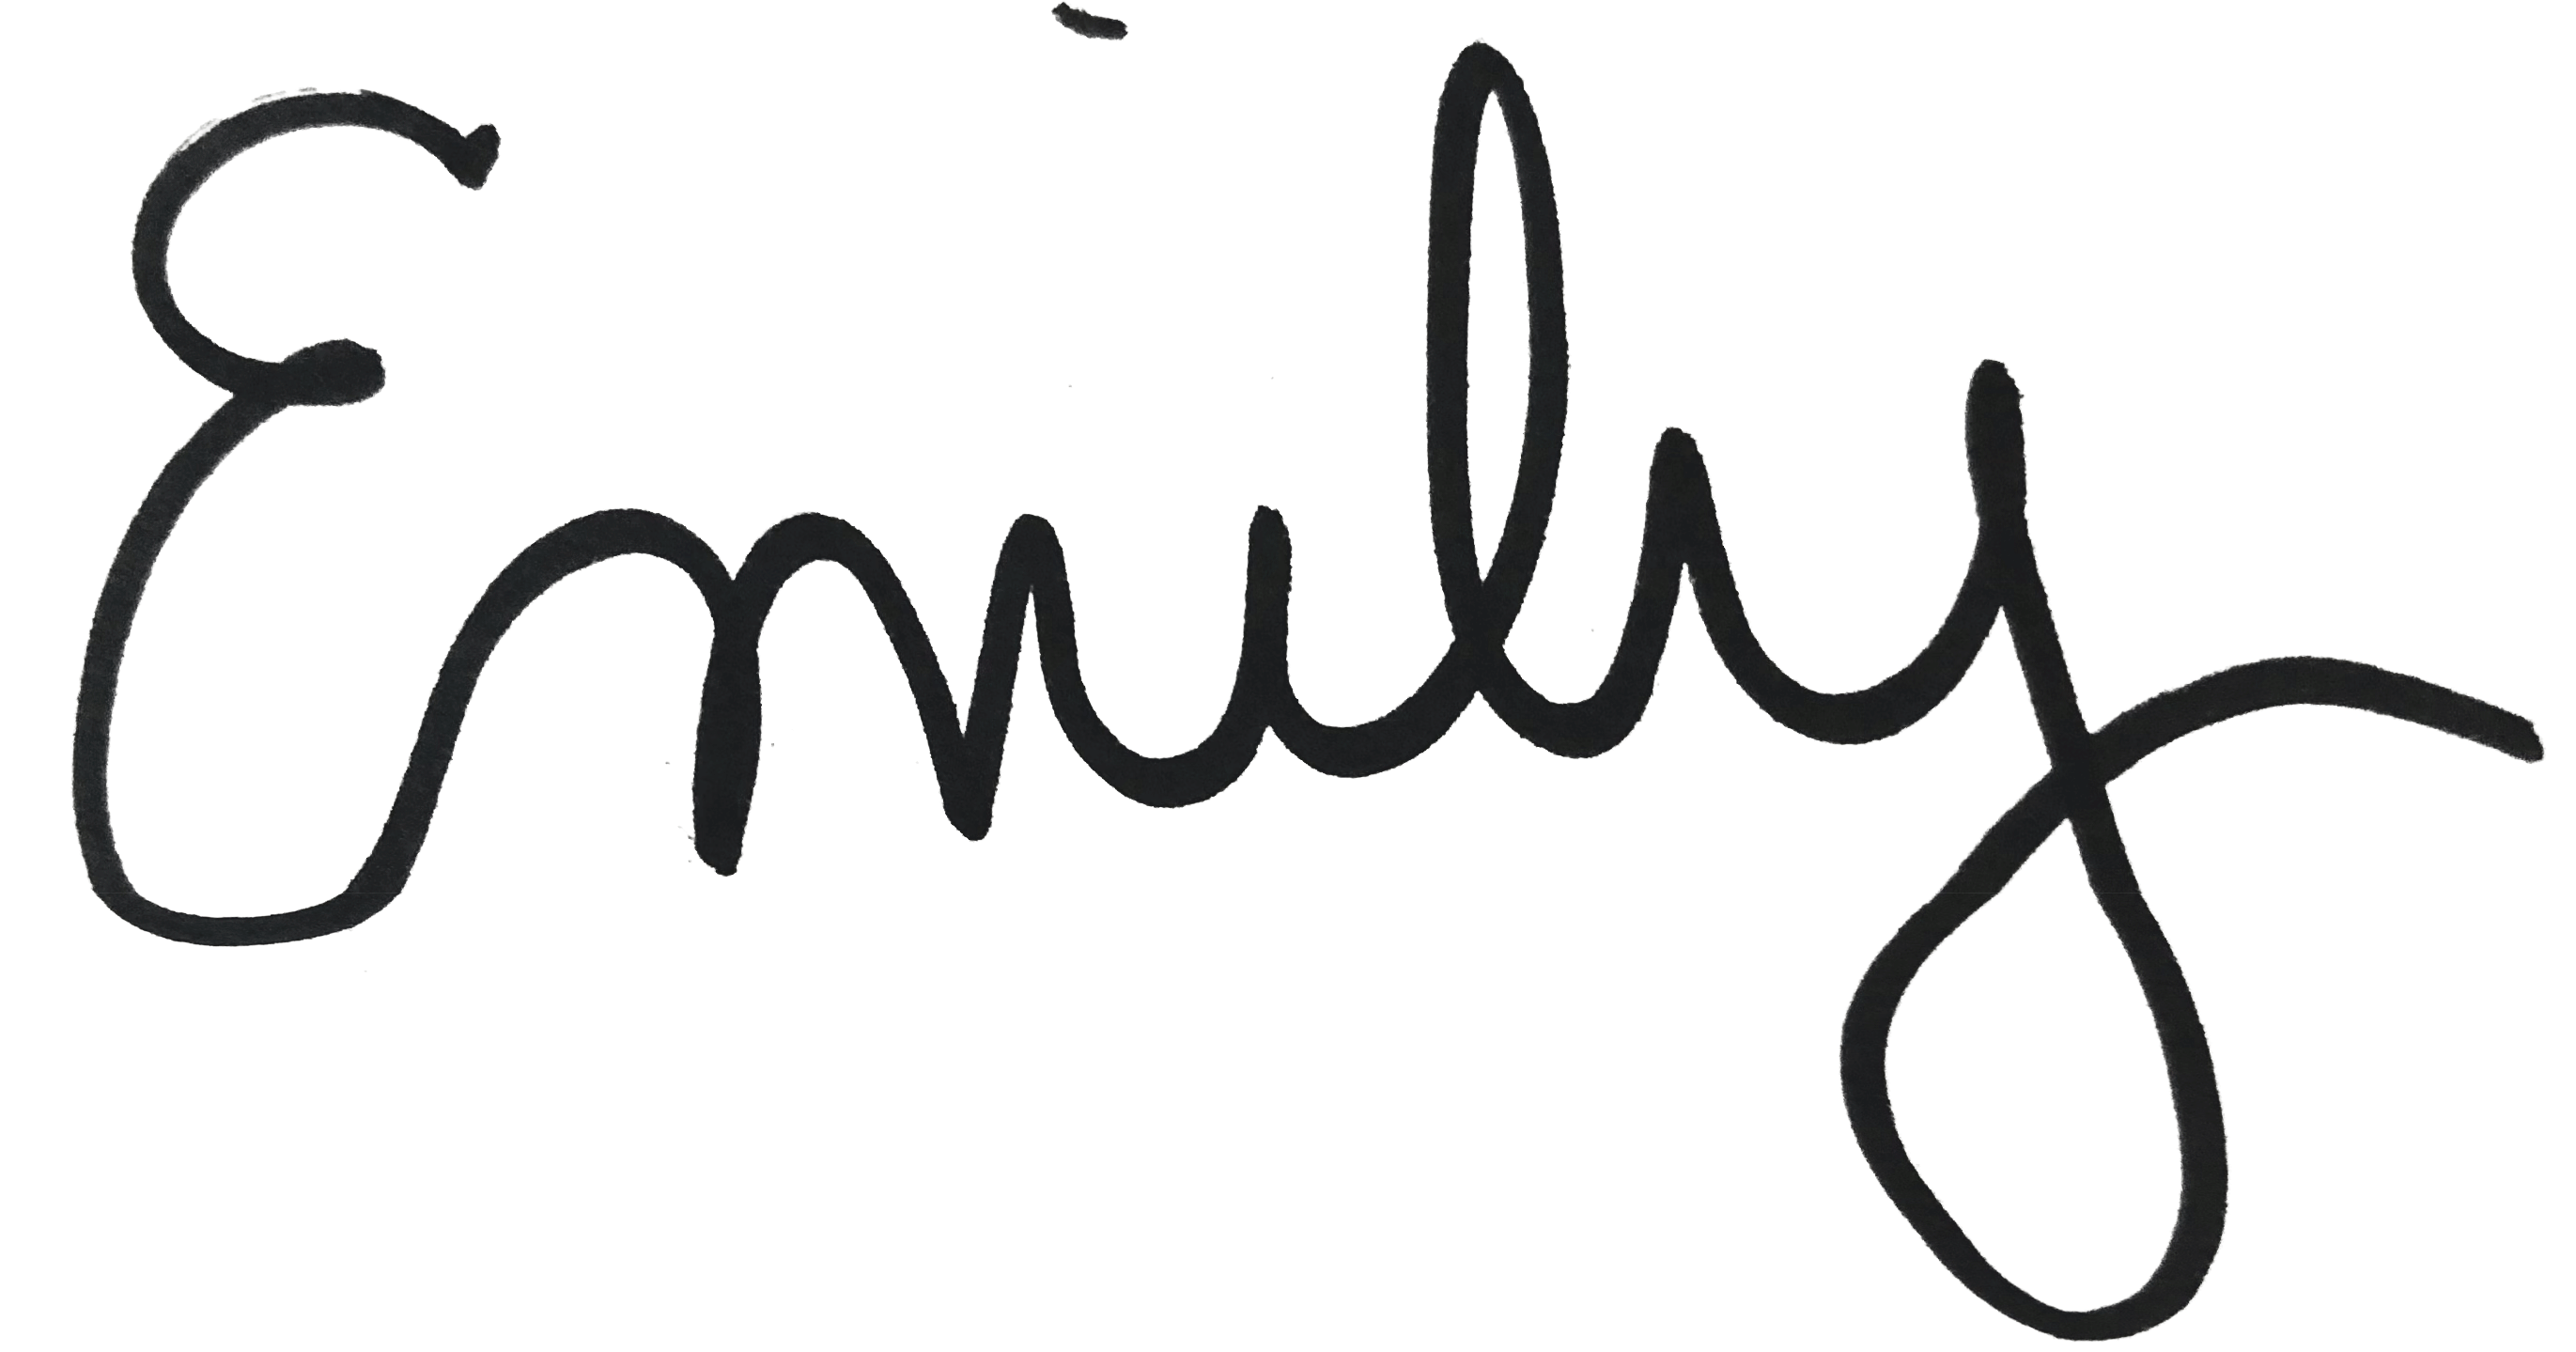 A handwritten Emily